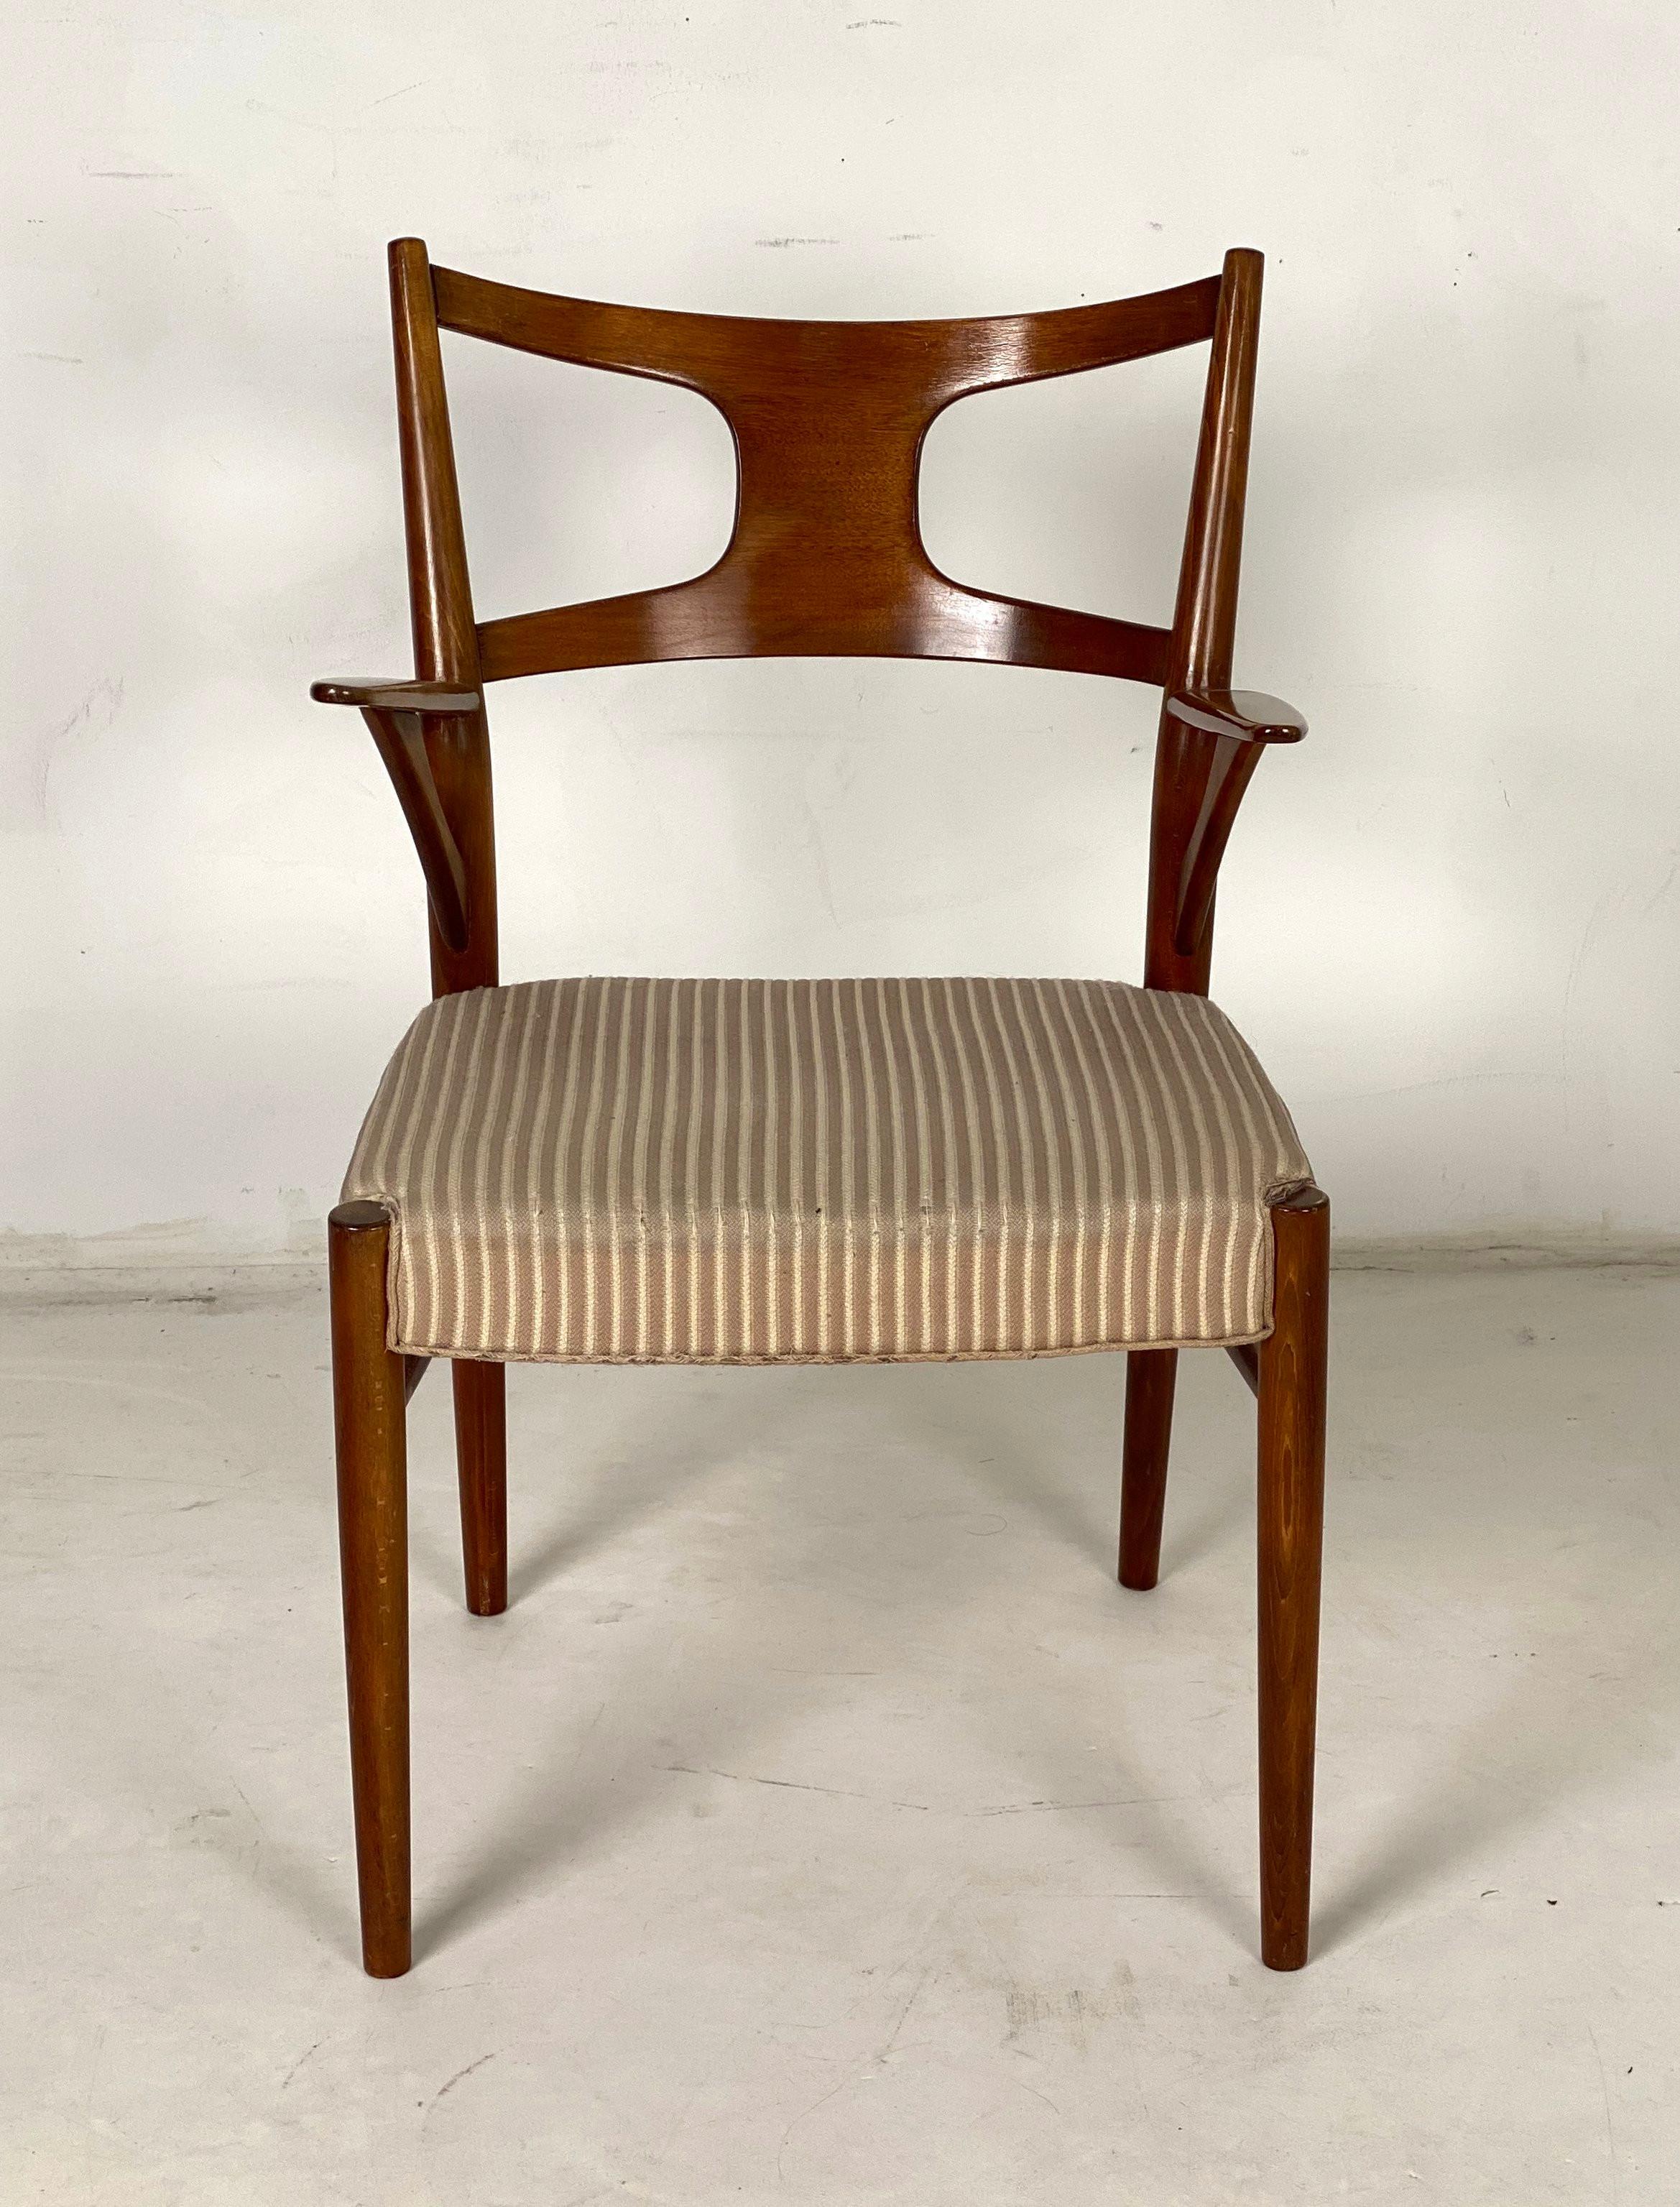 Fauteuil Kurt Østervig / fauteuil modèle 46, construction en bois, vraisemblablement en noyer, dossier ajouré, coussin d'assise avec revêtement rayé. Hauteur 86 cm, largeur 52 cm, profondeur 52 cm. 
Jusqu'à 3 pièces disponibles, prix 